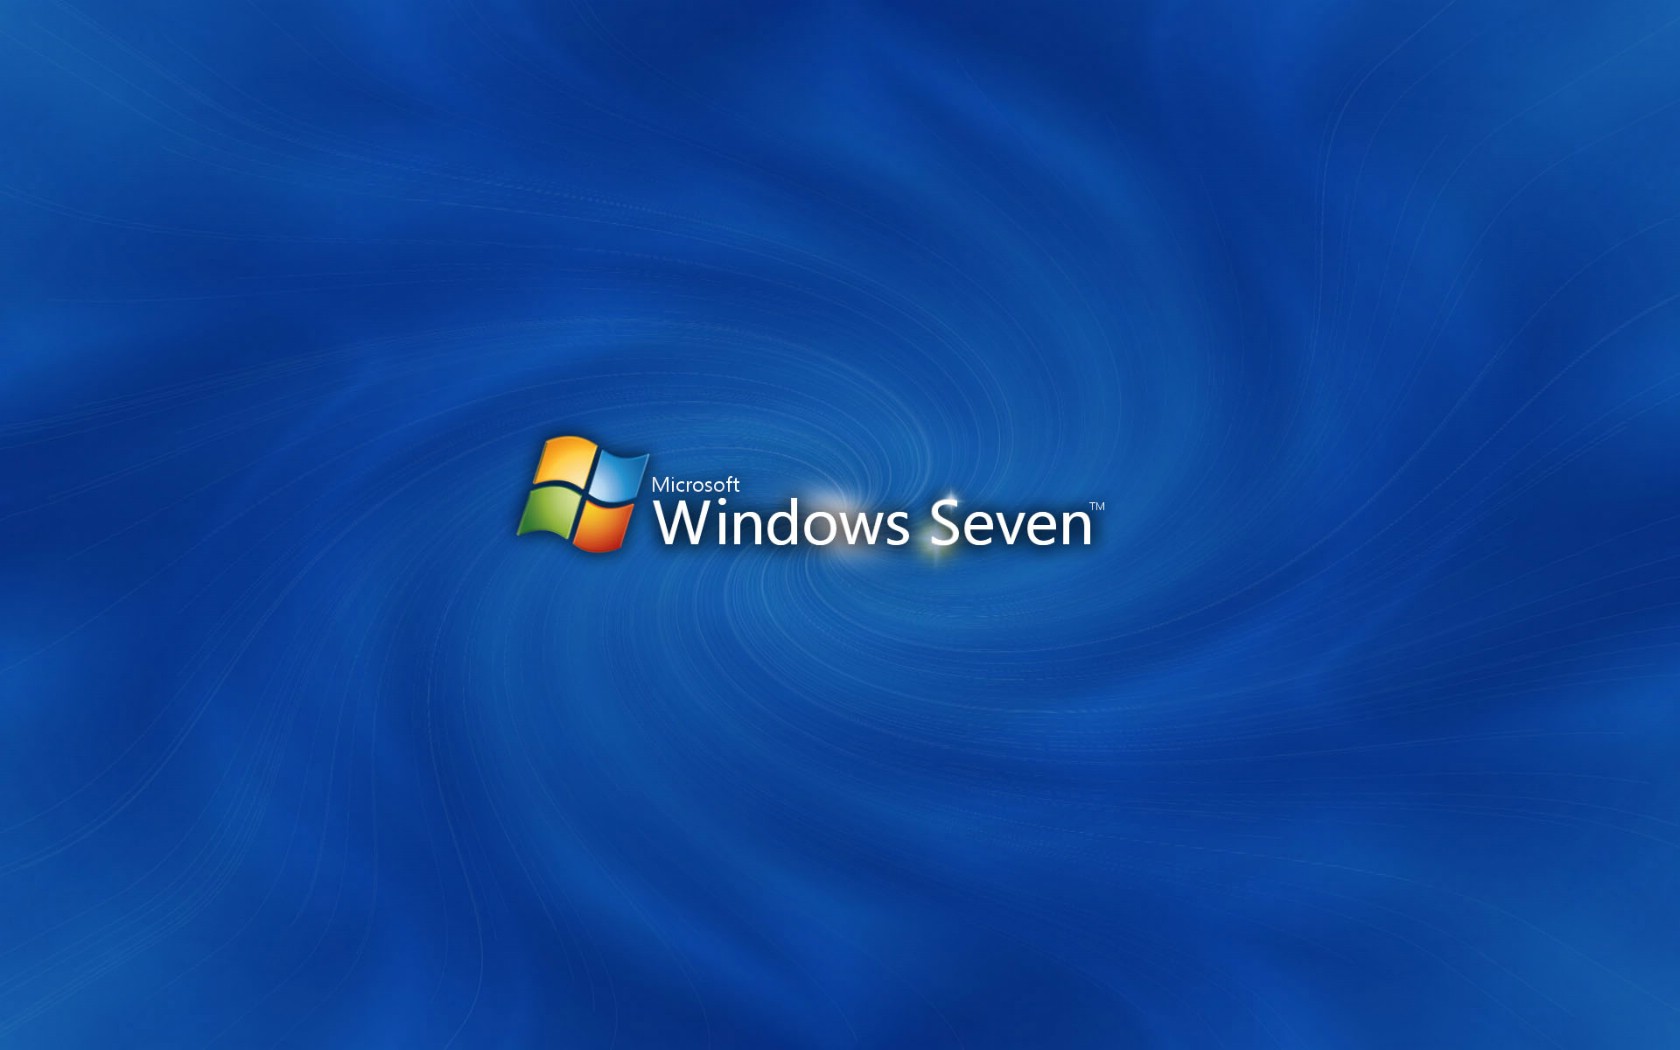 壁纸1680x1050Windows7 3 8壁纸 Windows7壁纸 Windows7图片 Windows7素材 系统壁纸 系统图库 系统图片素材桌面壁纸